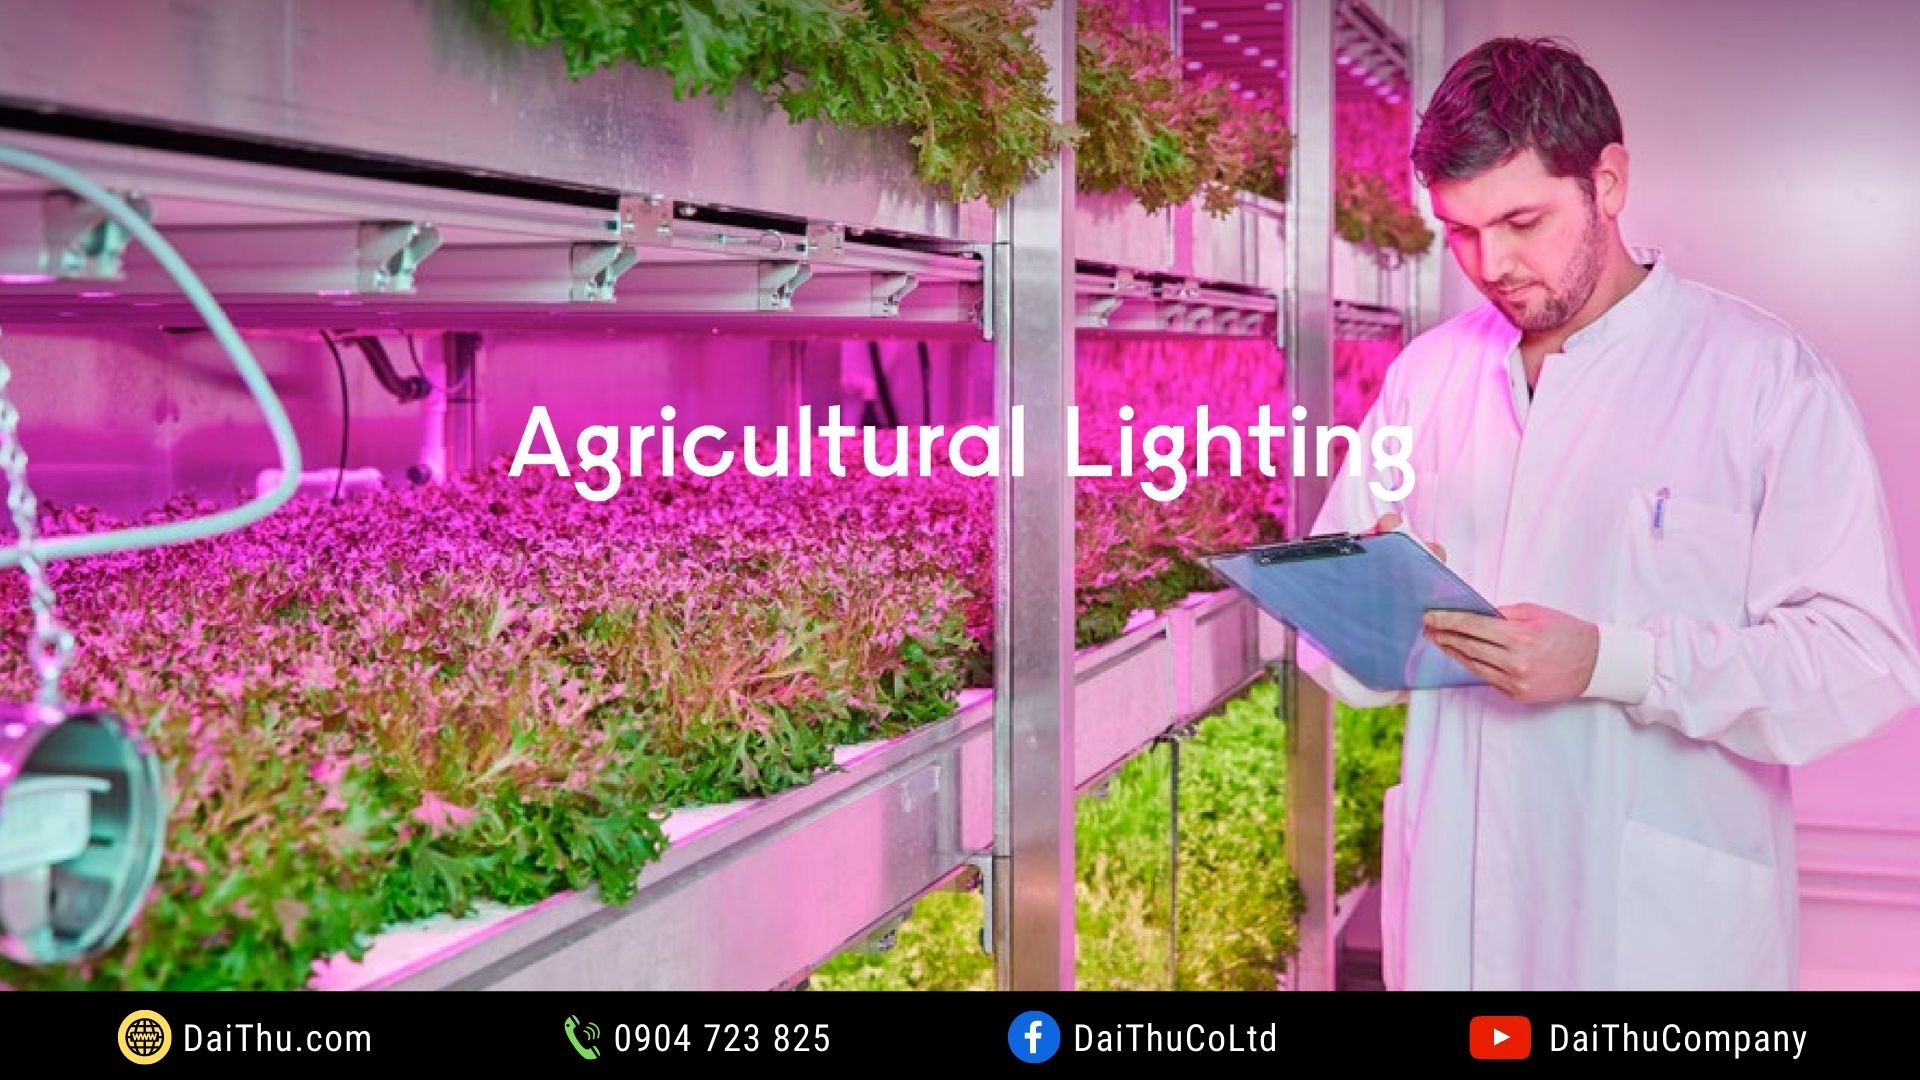 Đèn Led nông nghiệp - chiếu sáng nông nghiệp - Chiếu sáng trồng trọt - Green Power Led Lighting Philips - Horticulture Led Lighting - Agri Led Lighting - Led Grow Light